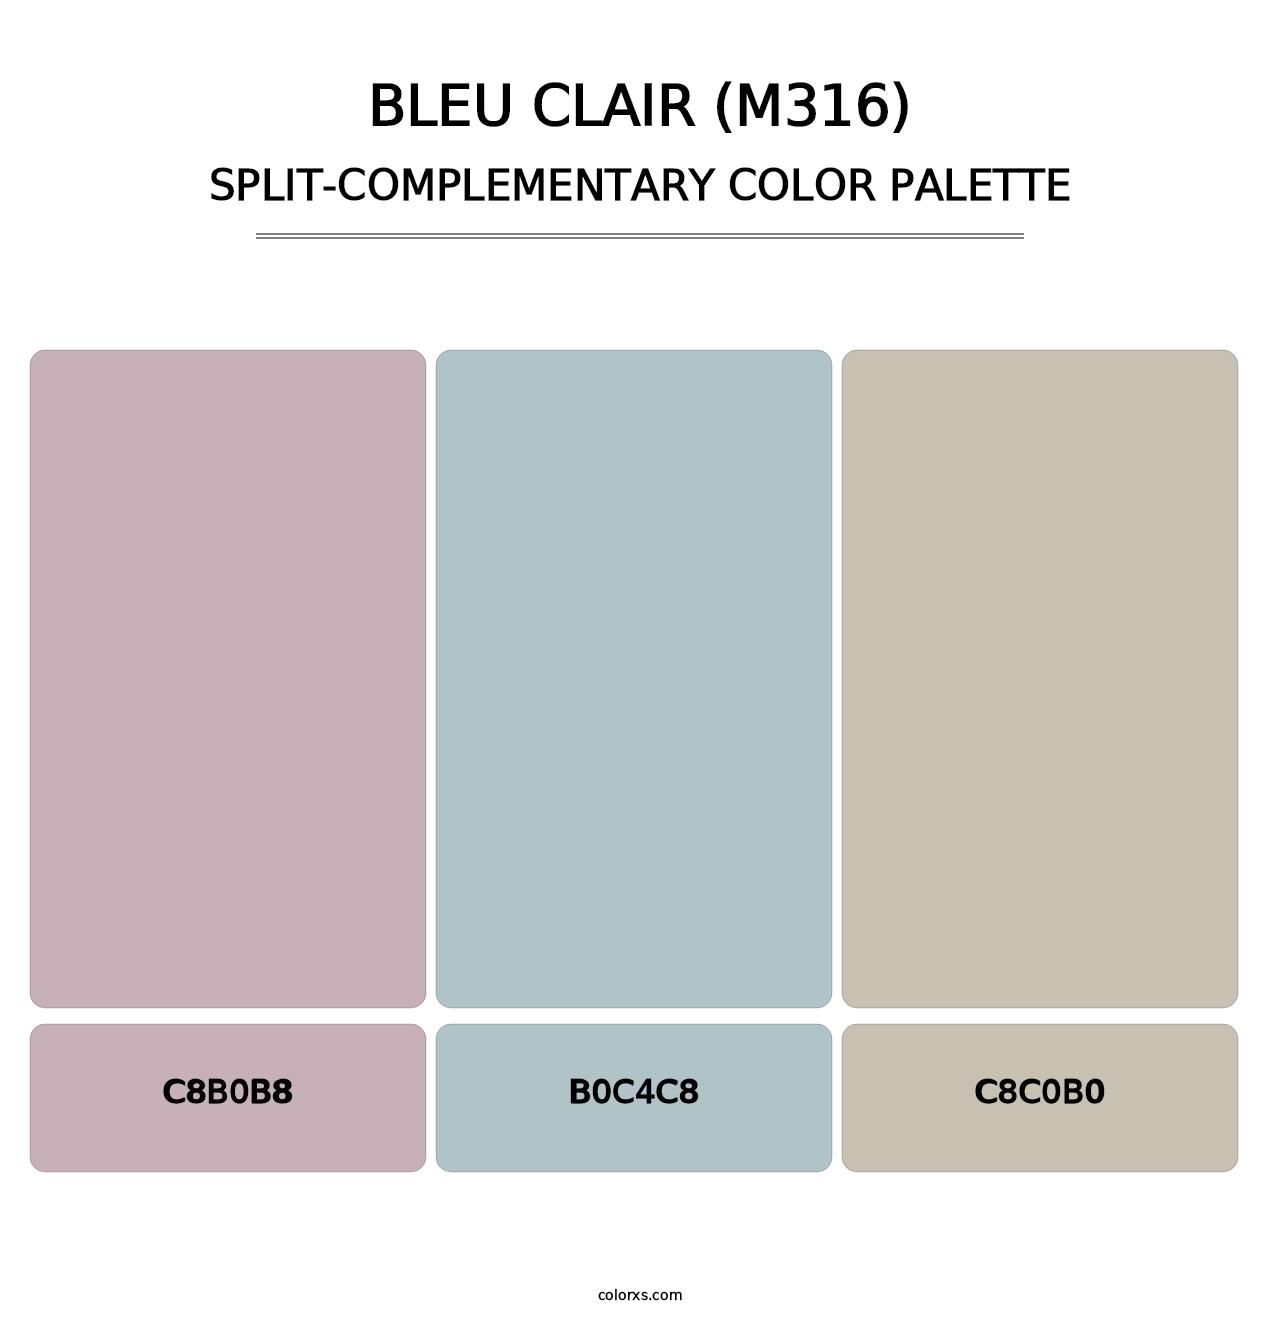 Bleu Clair (M316) - Split-Complementary Color Palette